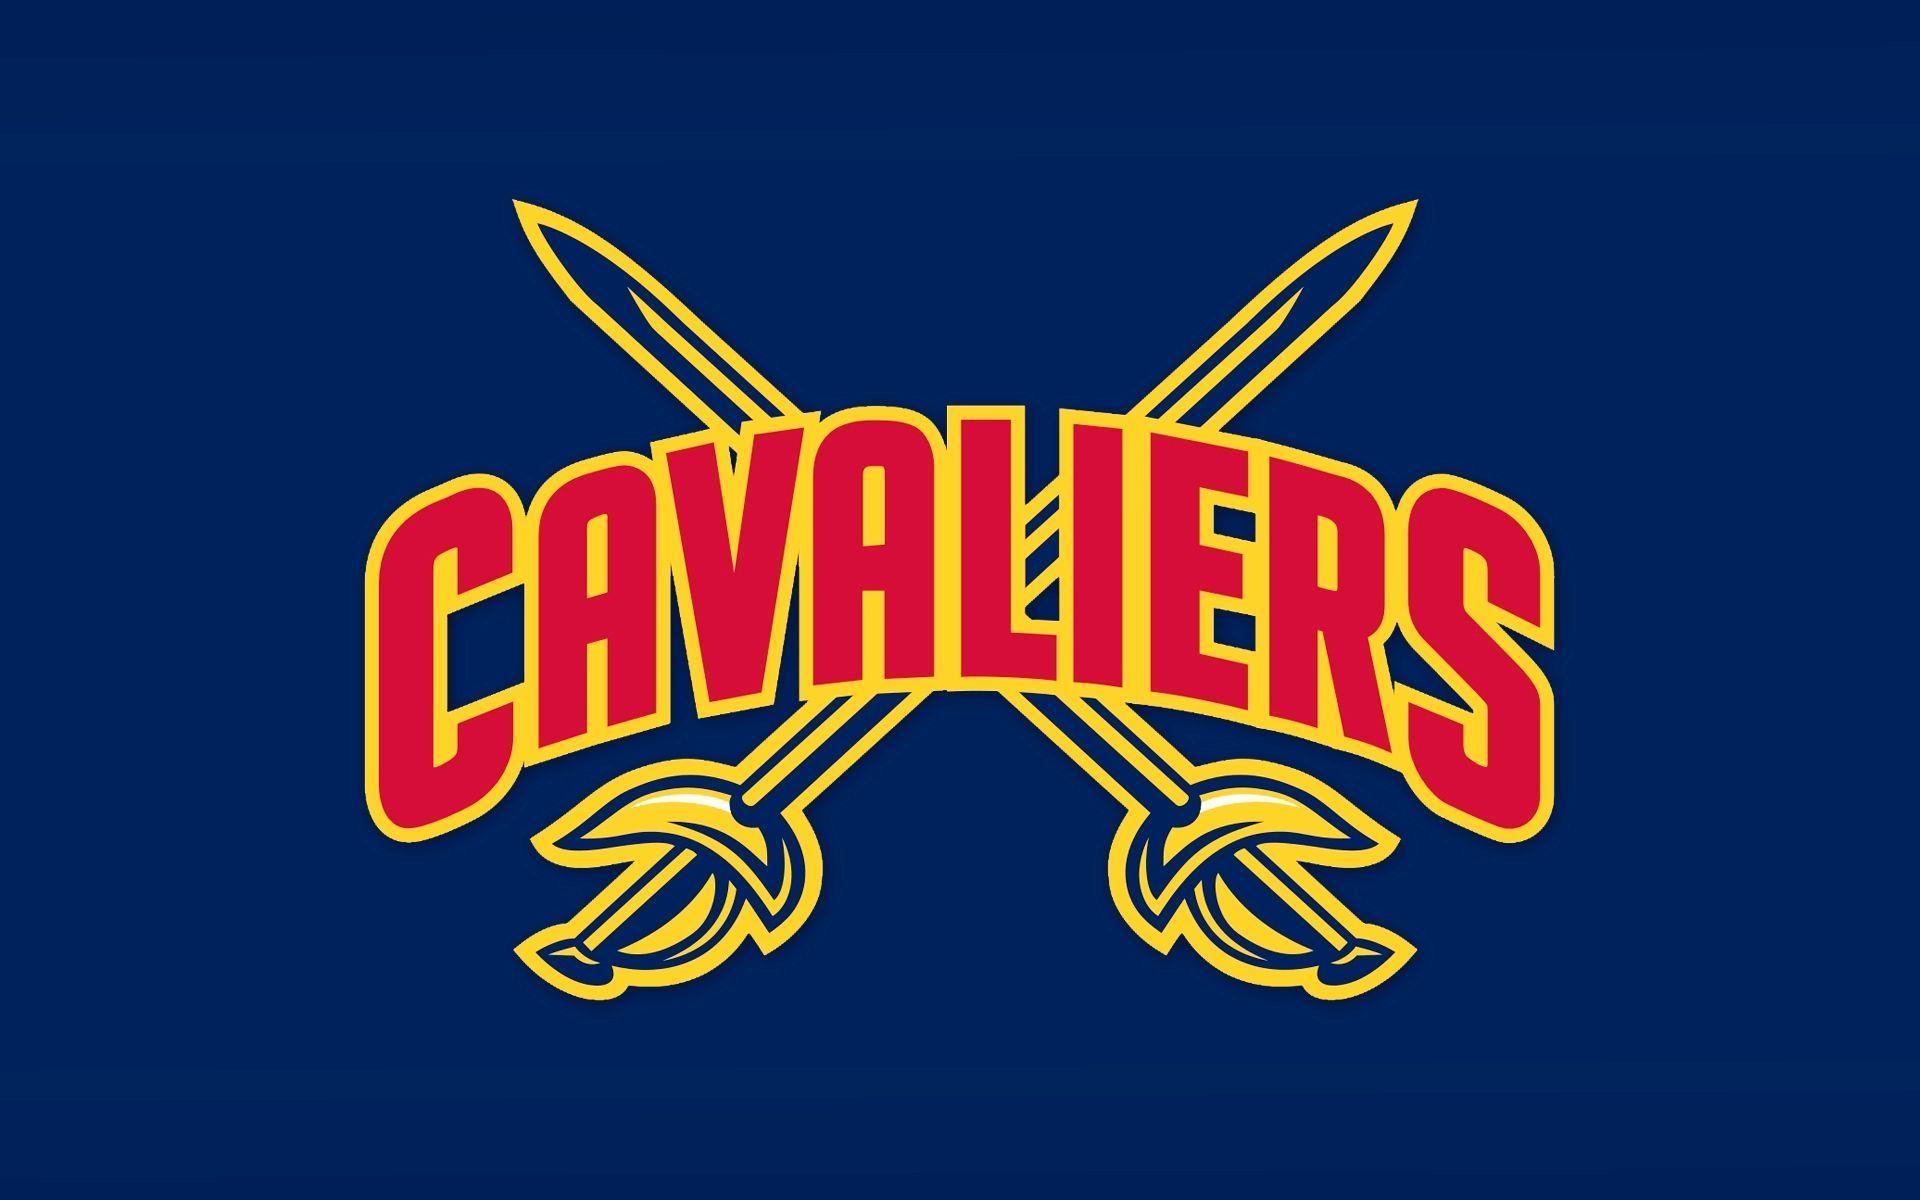 Résultats de recherche d'image pour « basketball team logo